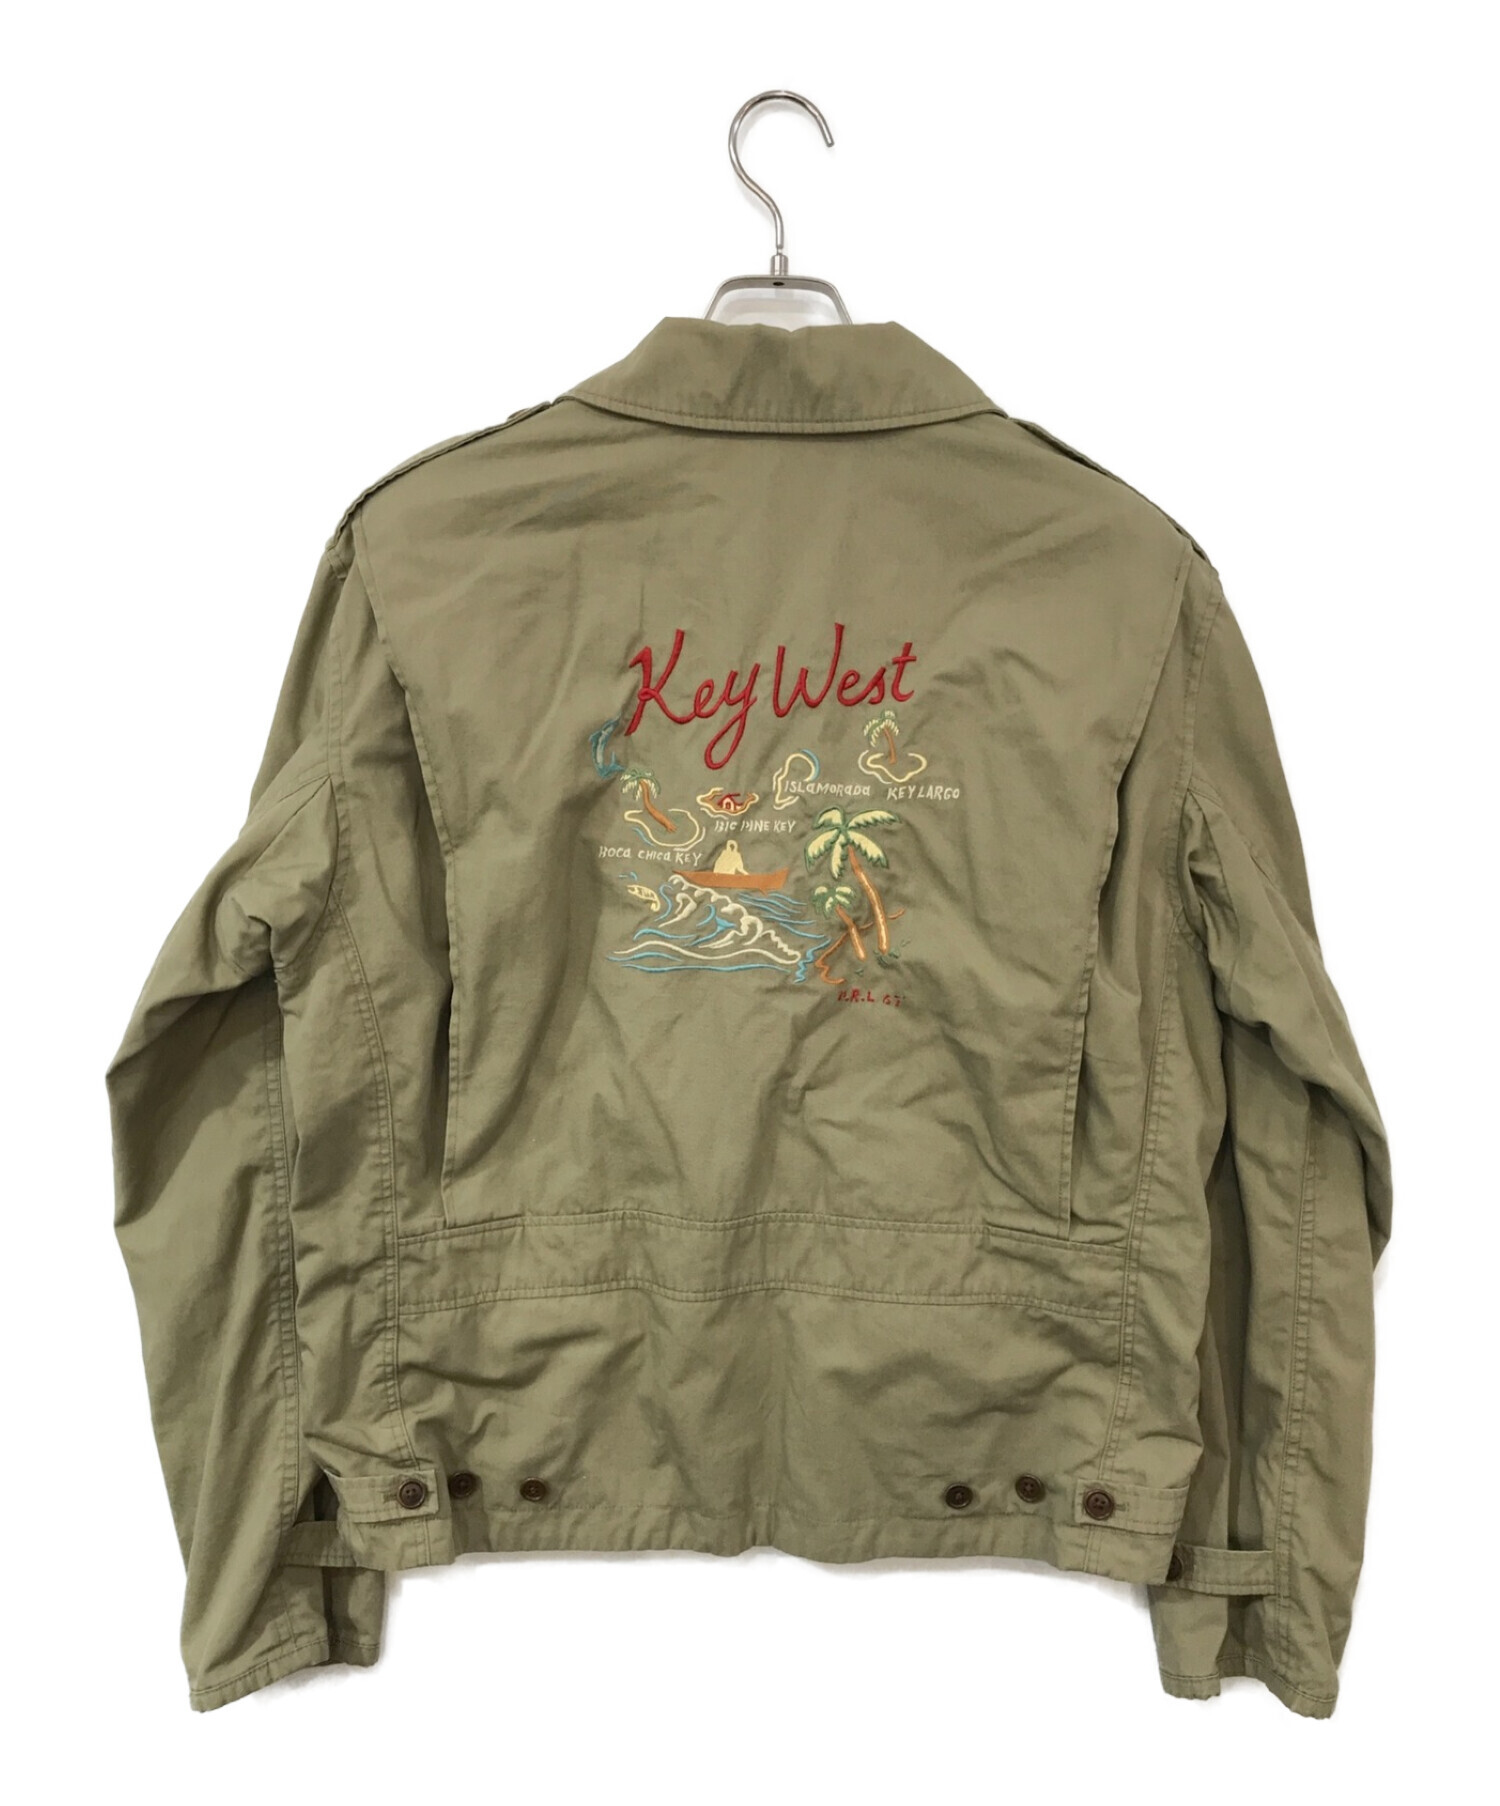 POLO RALPH LAUREN (ポロ・ラルフローレン) M1941 Key West Jacket カーキ サイズ:L